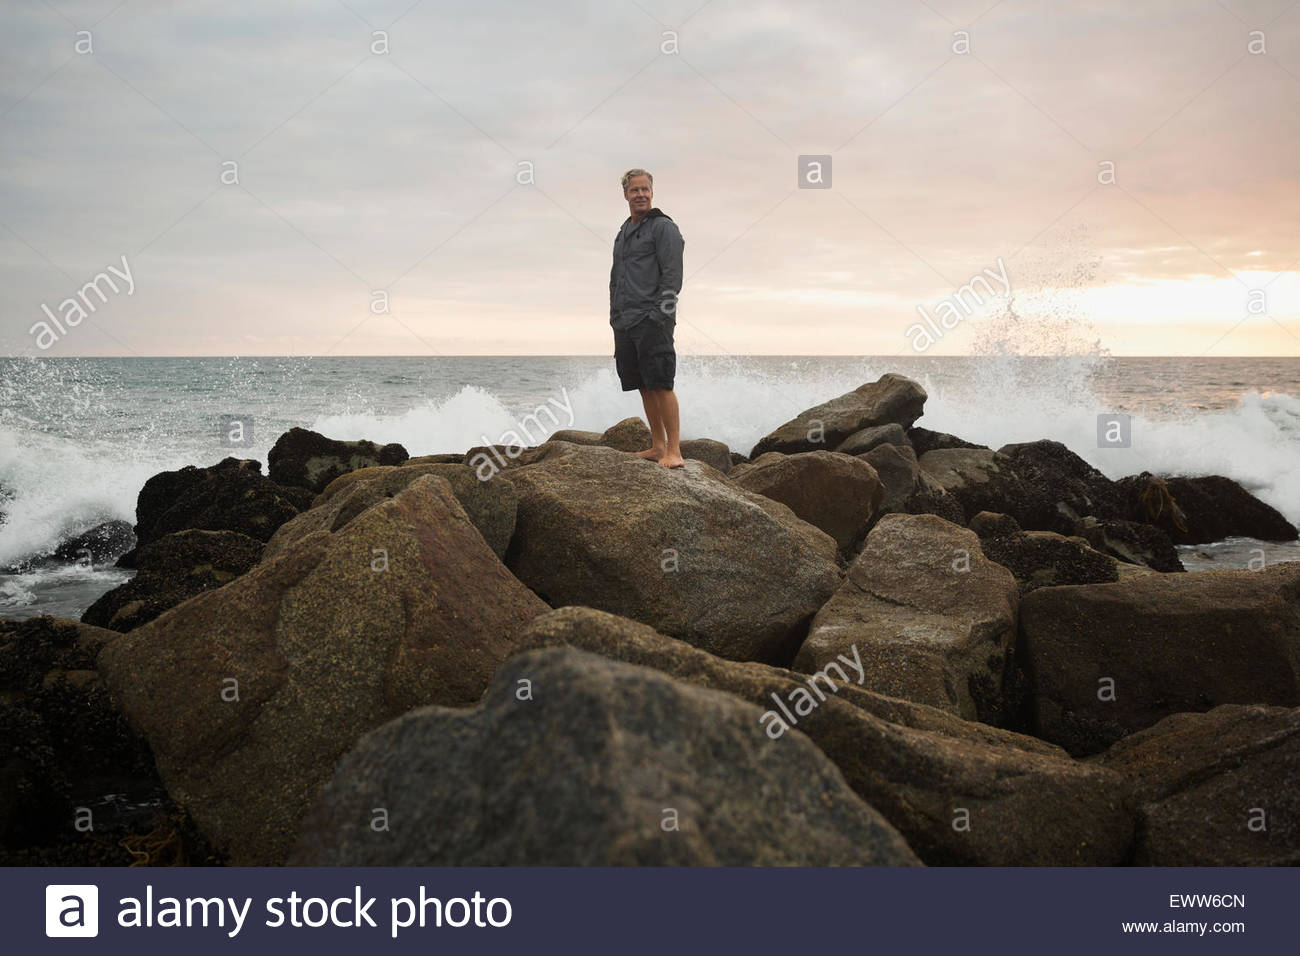 Ocean splashing rocks behind man at sunset Stock Photo